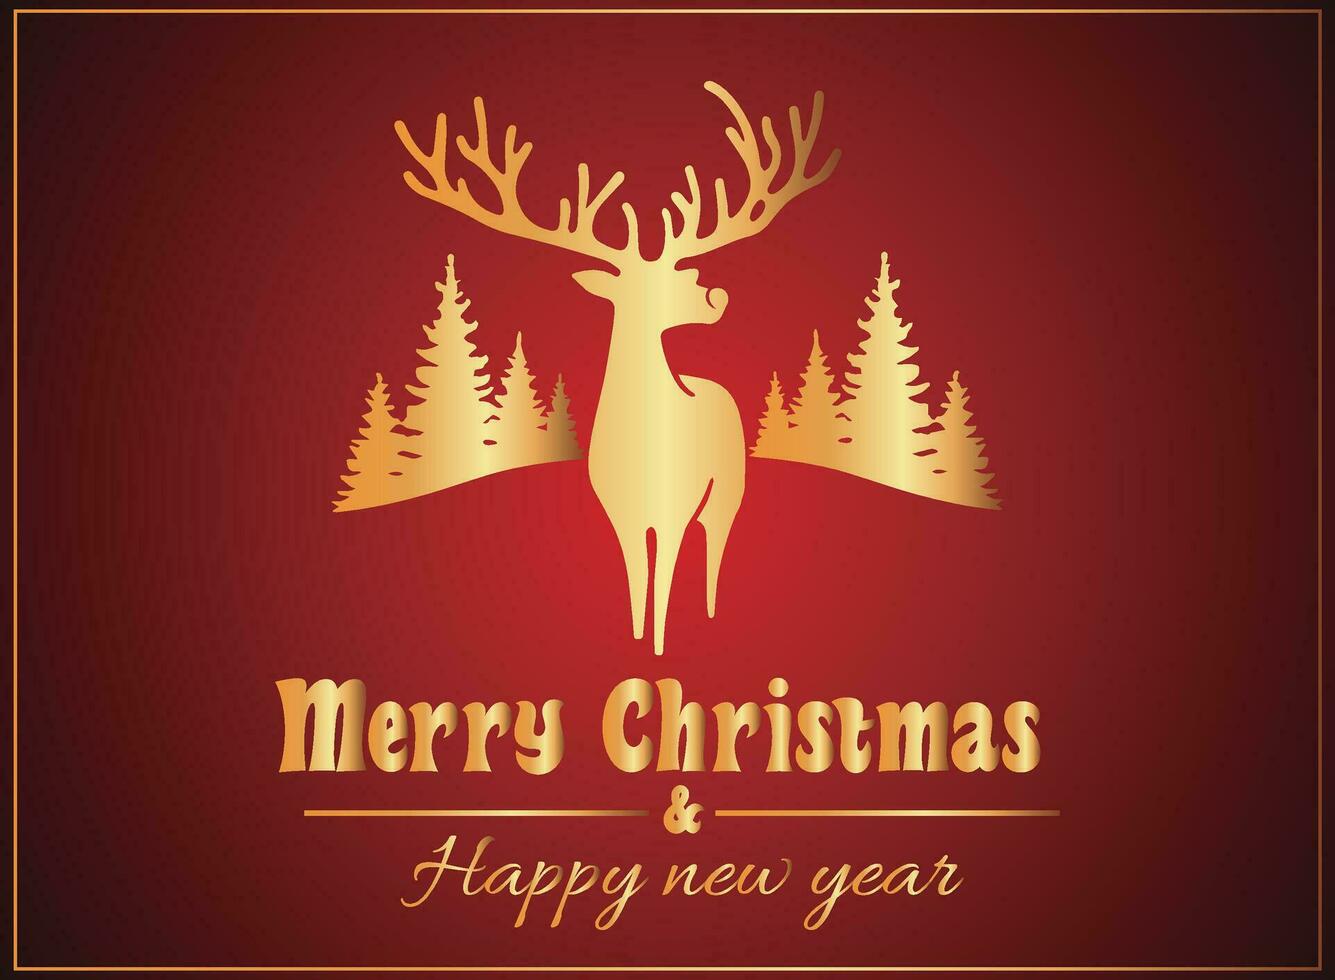 régio carmesim celebração, alegre Natal e feliz Novo ano elegância, Natal cartão vetor